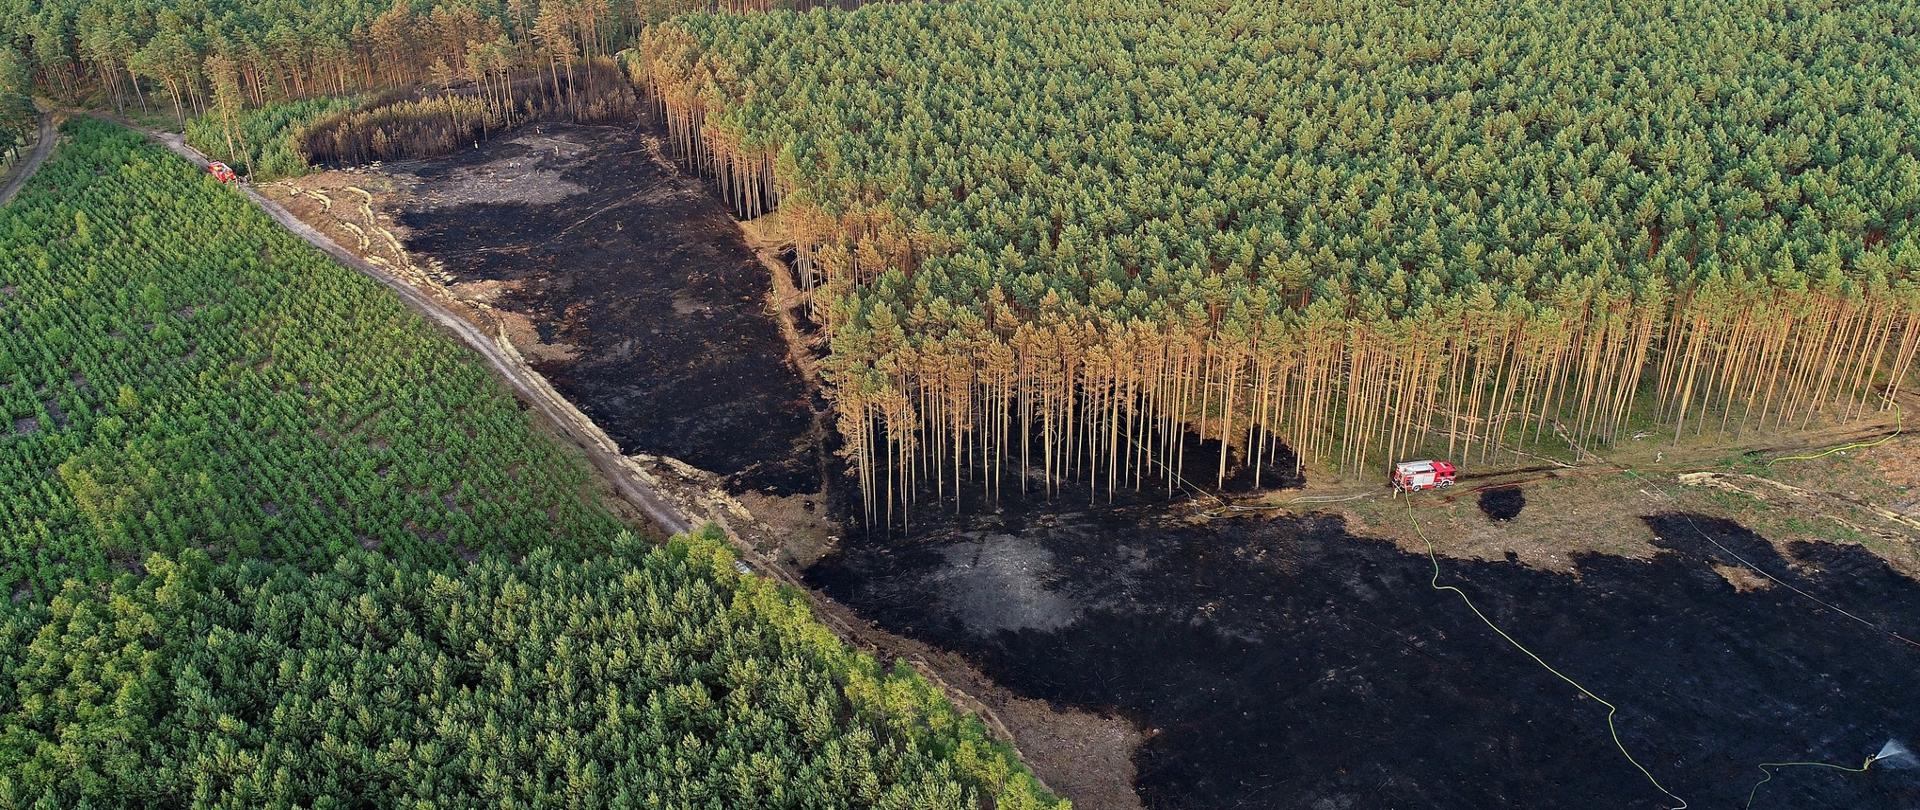 Zdjęcie wykonane na zewnątrz. Przedstawia pożar lasu. spalone poszycie leśne oraz drzewa i krzewy. Zdjęcie wykonane z drona. Widać również samochód gaśniczy wraz z wężem.